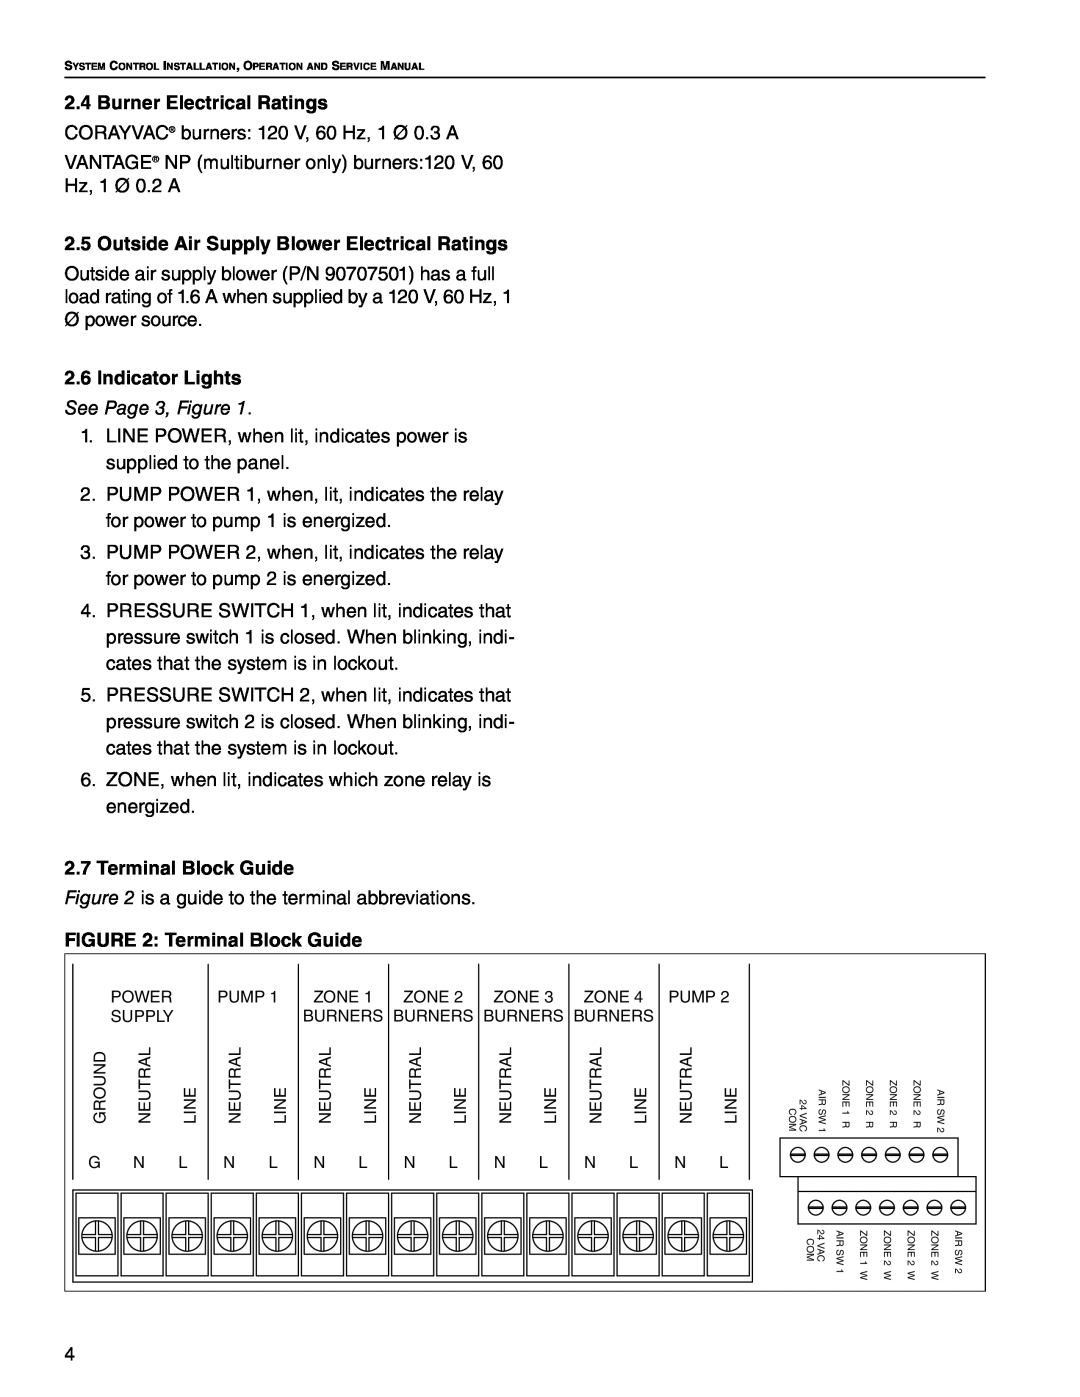 Roberts Gorden HP 230 V 3 Burner Electrical Ratings, Outside Air Supply Blower Electrical Ratings, 2.7Terminal Block Guide 